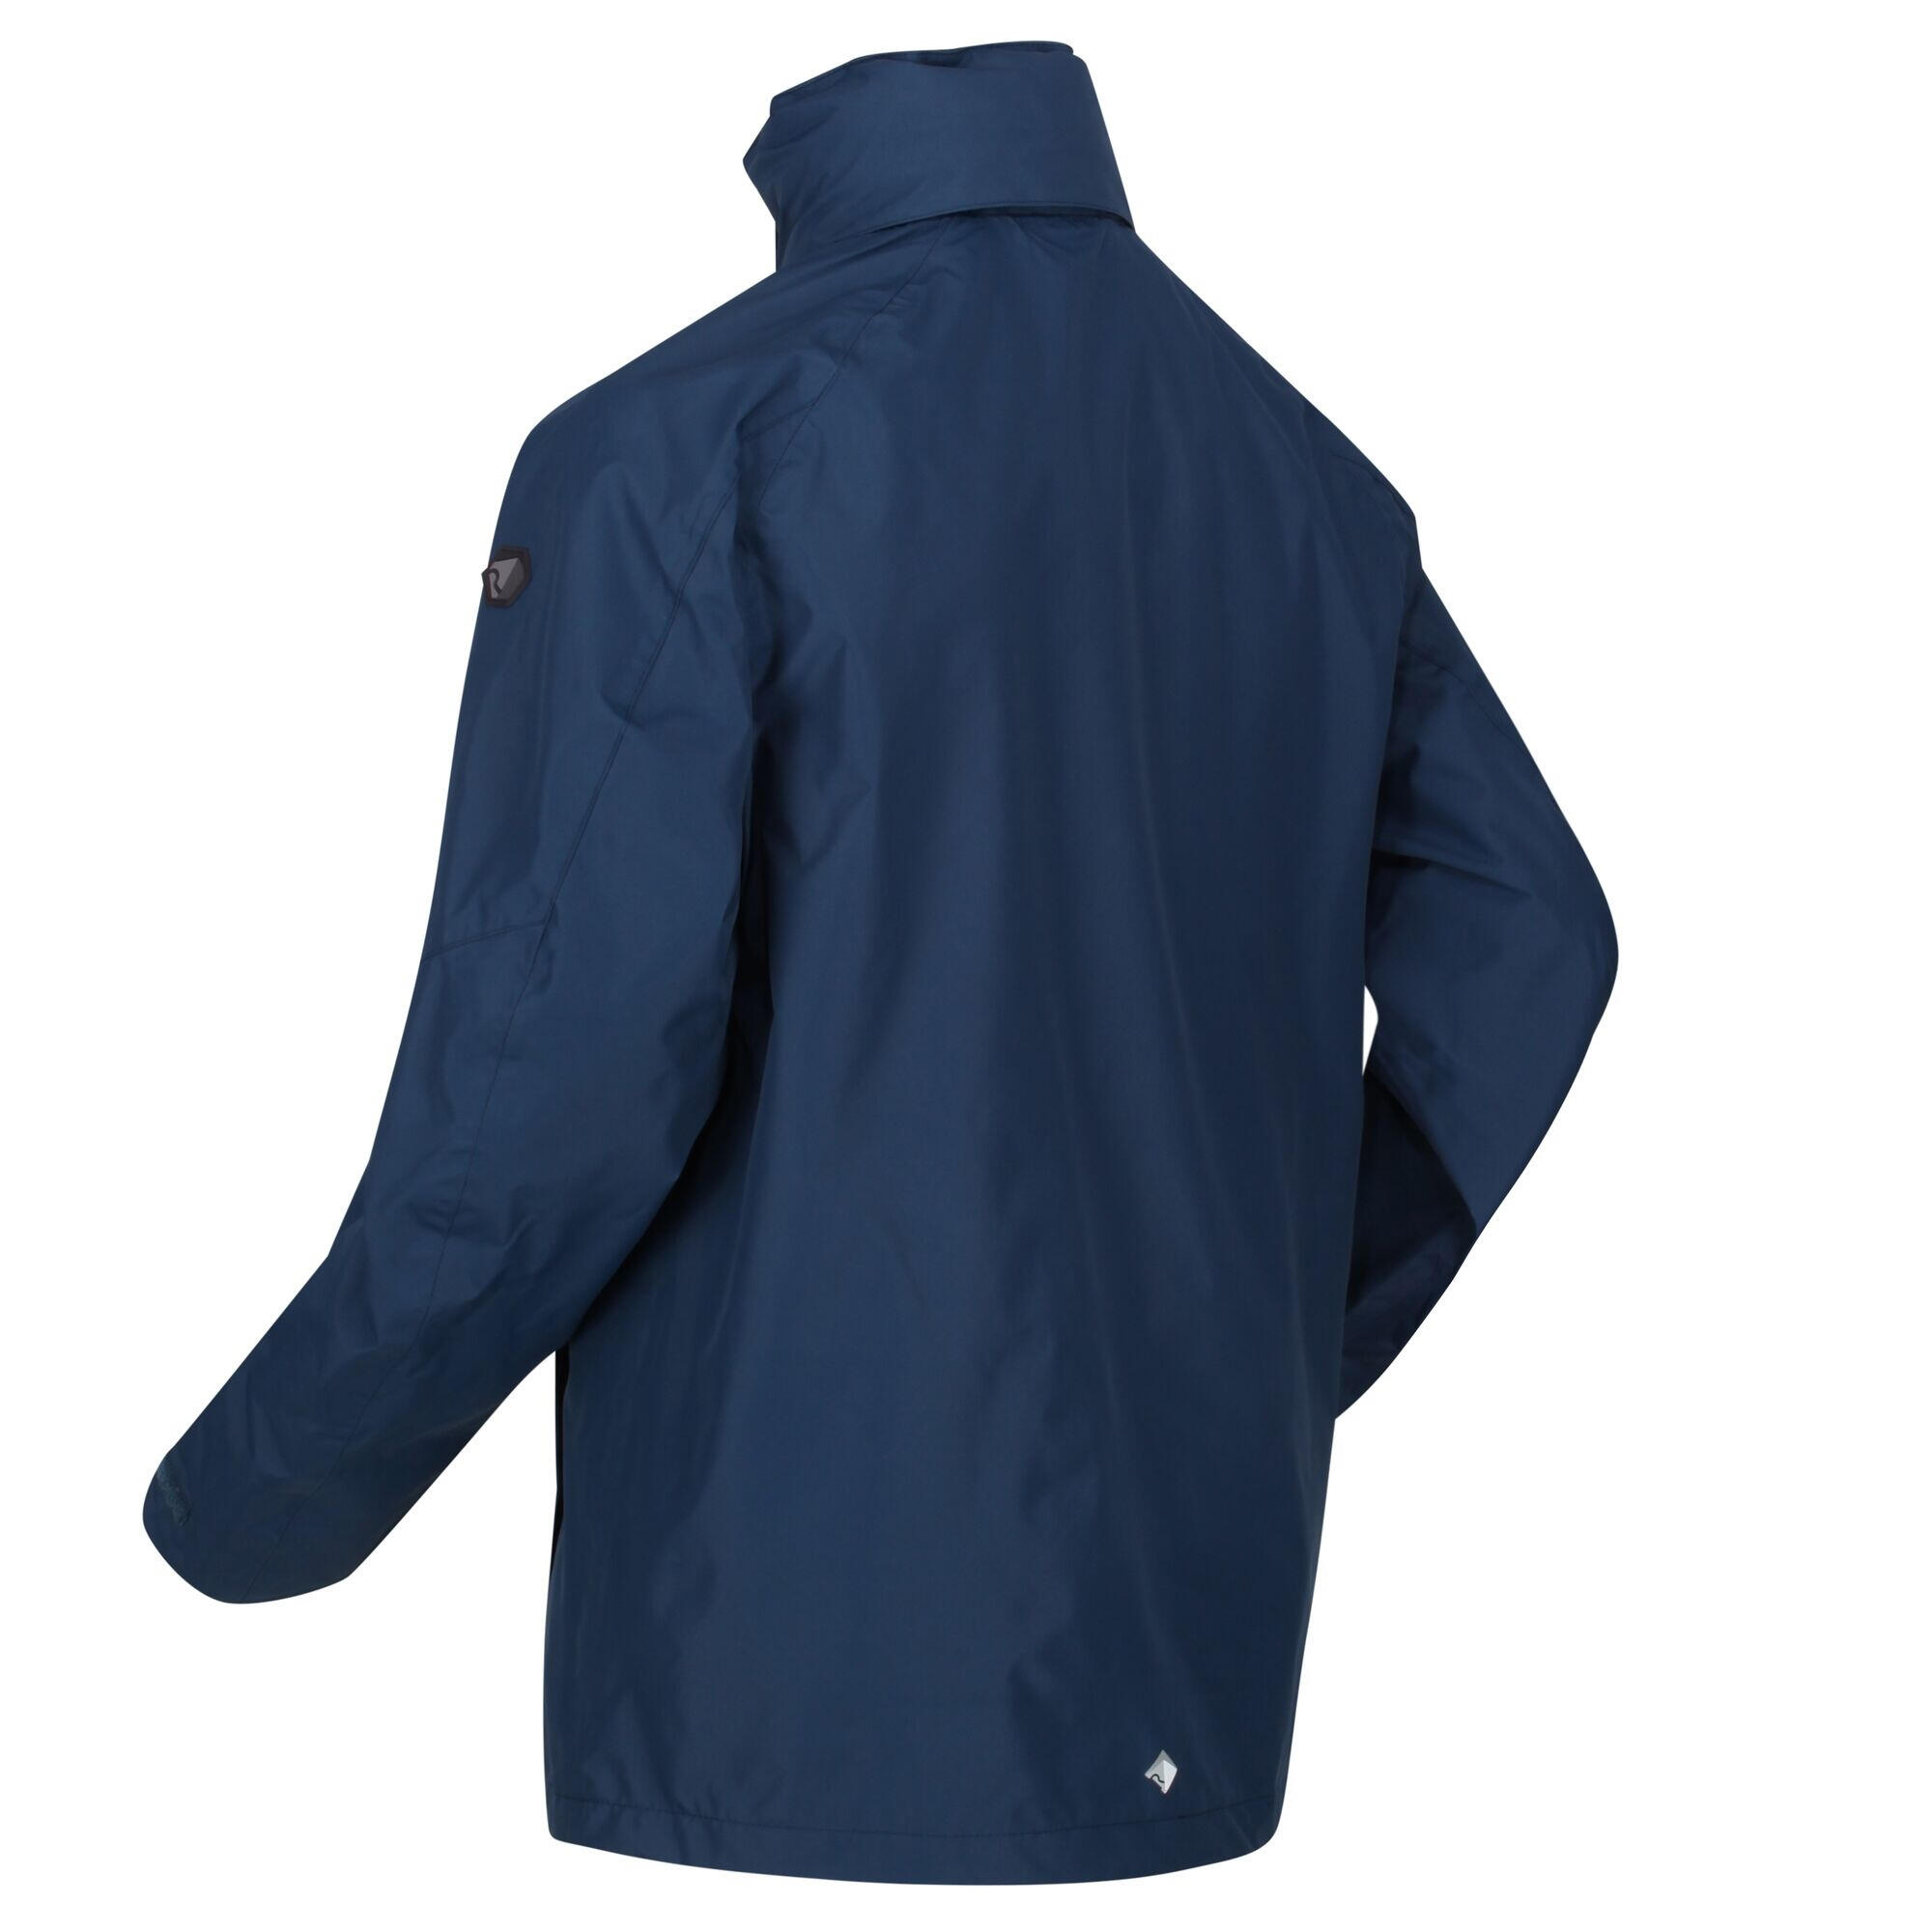 Mens Calderdale IV Waterproof Softshell Hooded Walking Jacket (Moonlight Denim) 4/5